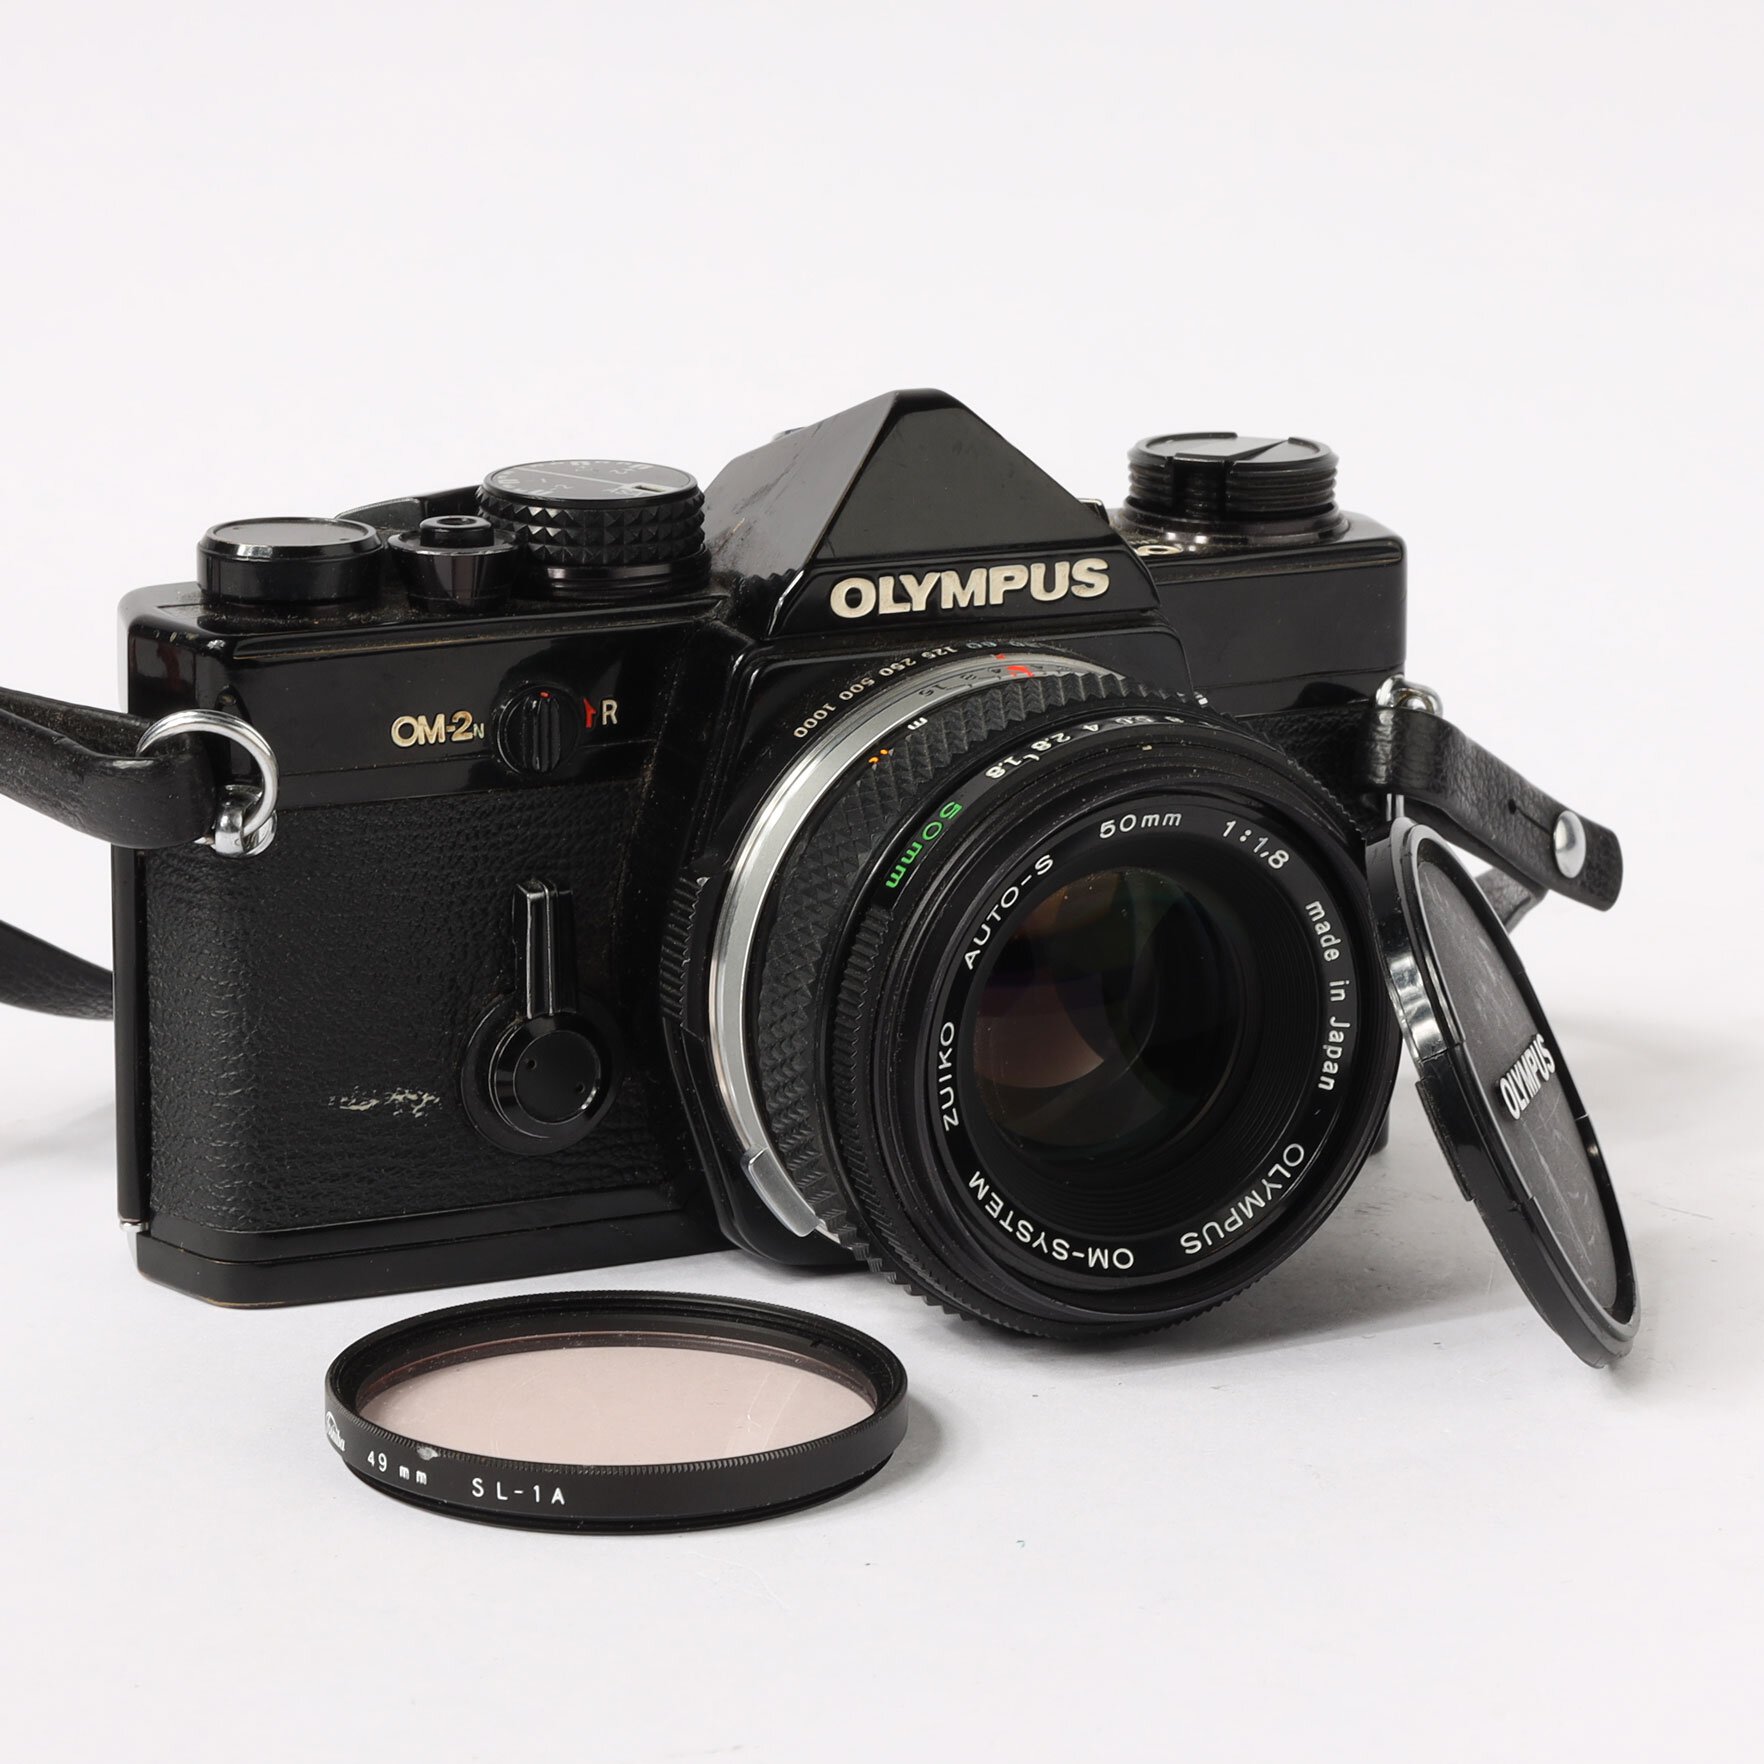 Olympus OM-2N Auto-S 1.8/50mm